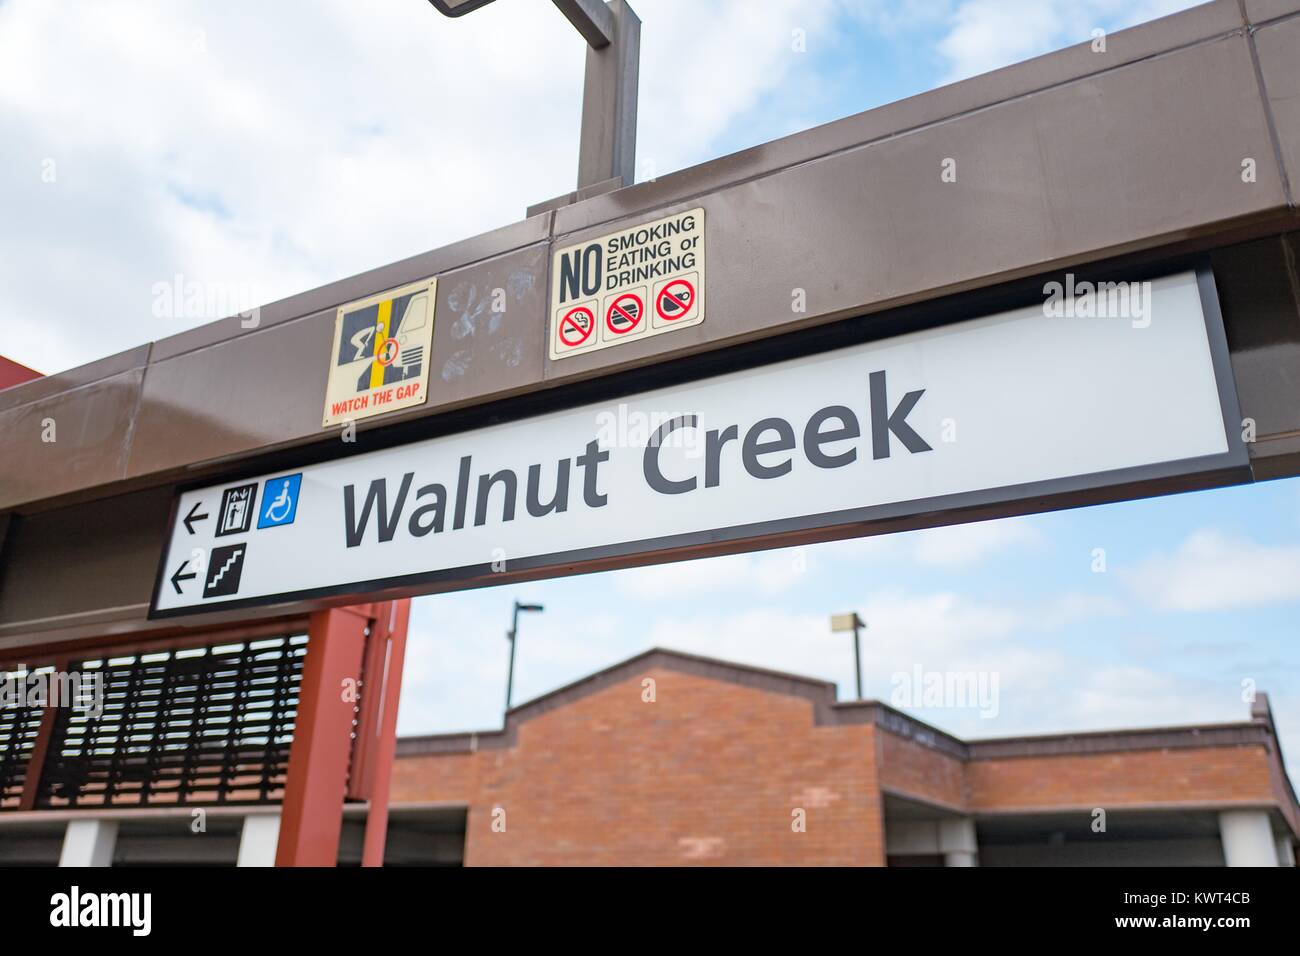 Segno per il Walnut Creek, California stazione della Bay Area Rapid Transit (BART) Sistema ferroviario leggero, 13 settembre 2017. Foto Stock